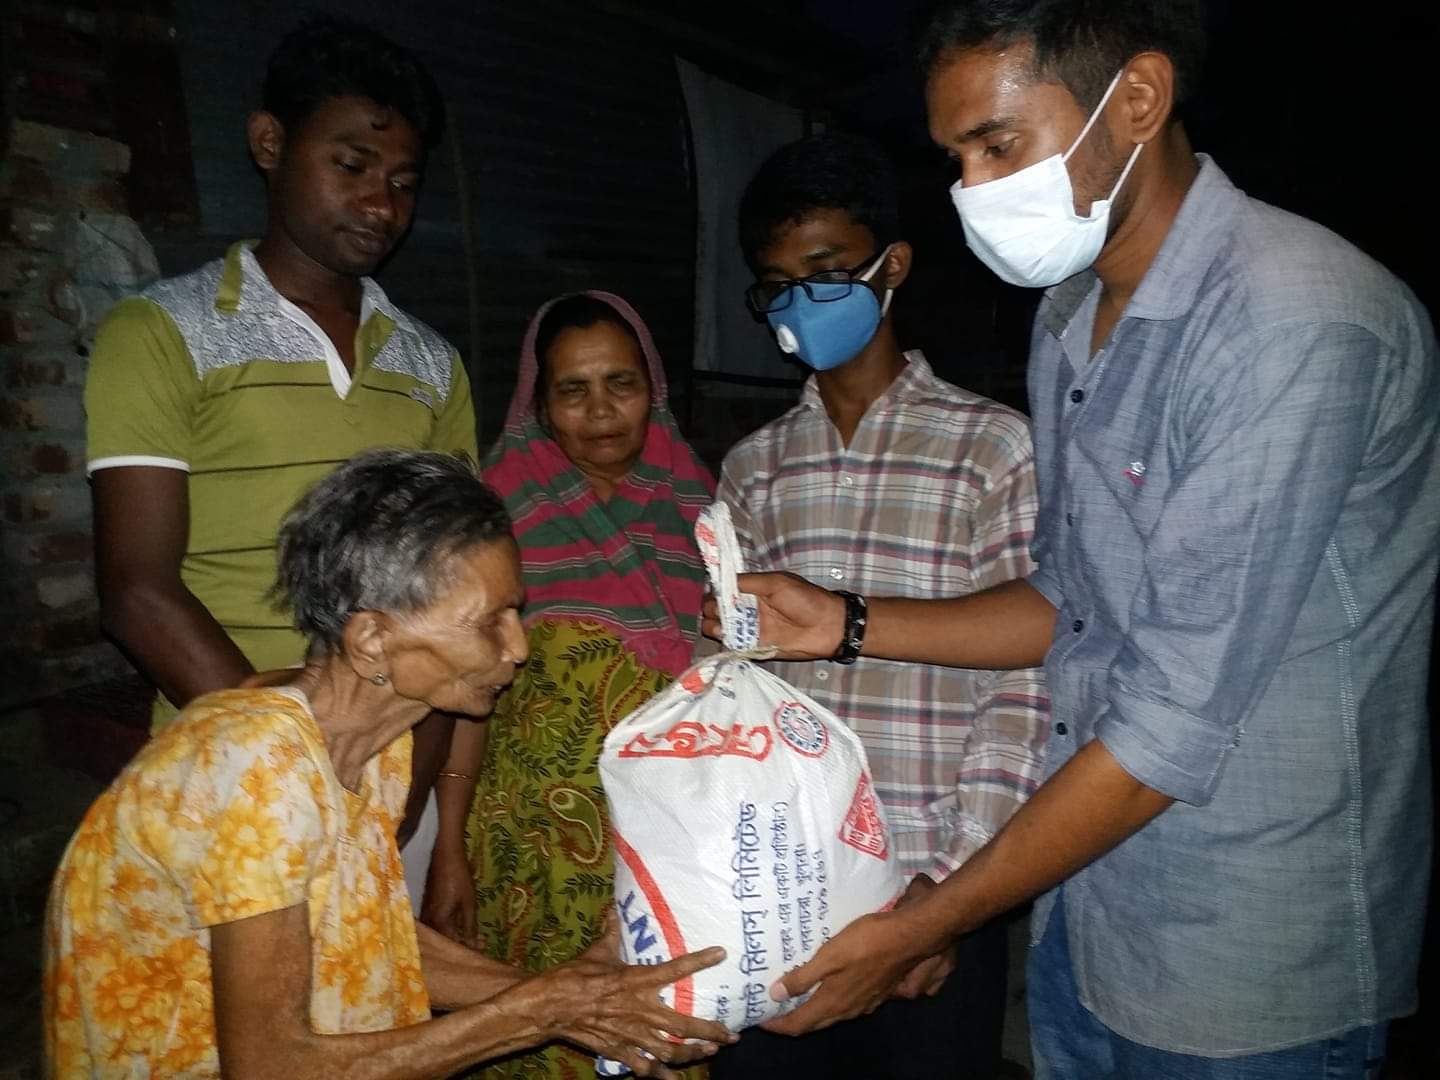 Coronavirus aid in Bangladesh